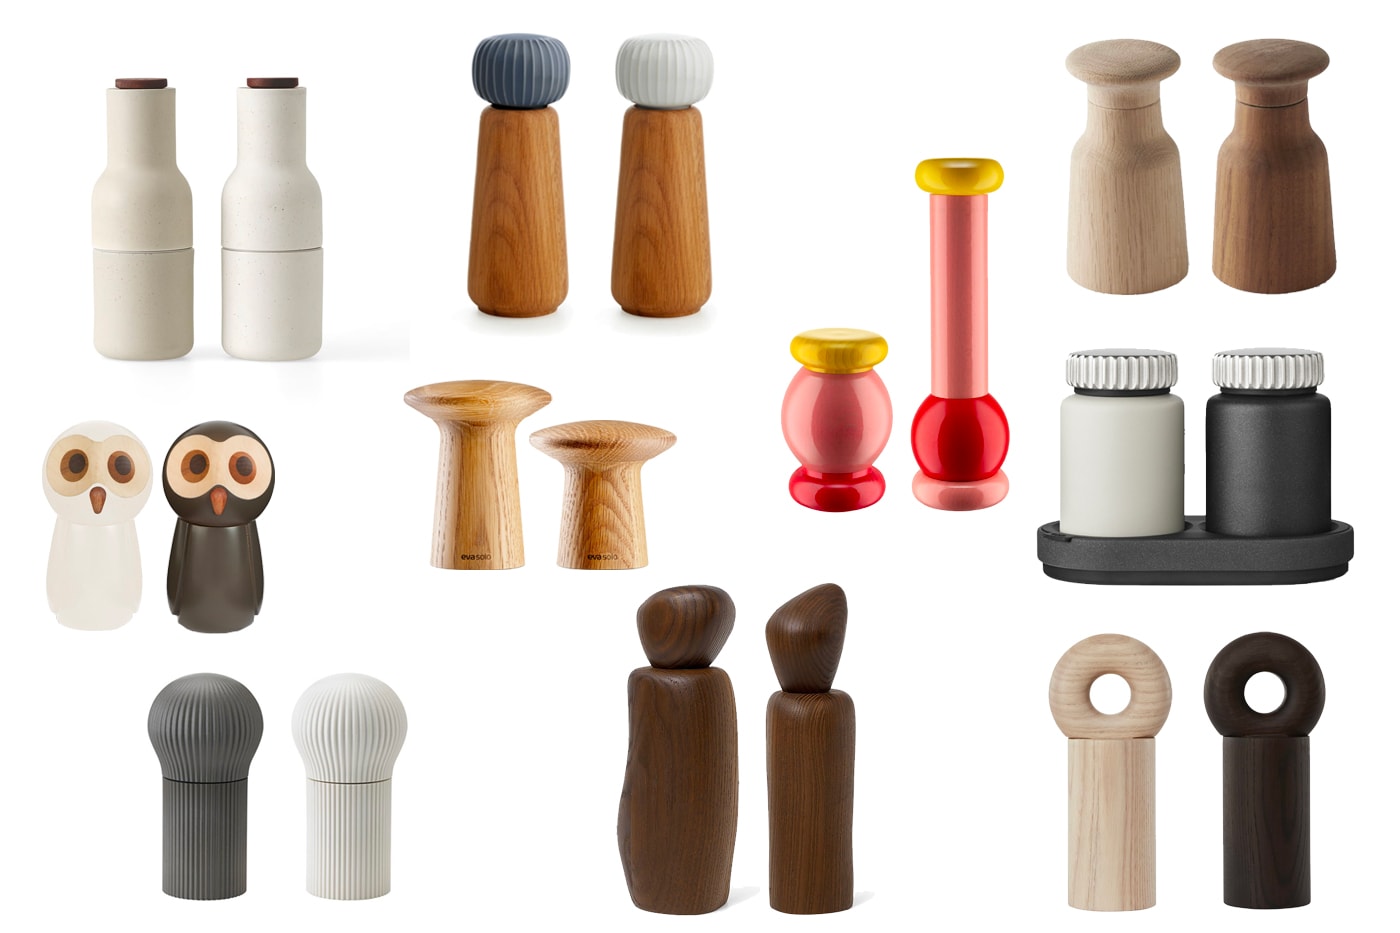 Personalised salt and pepper grinder set